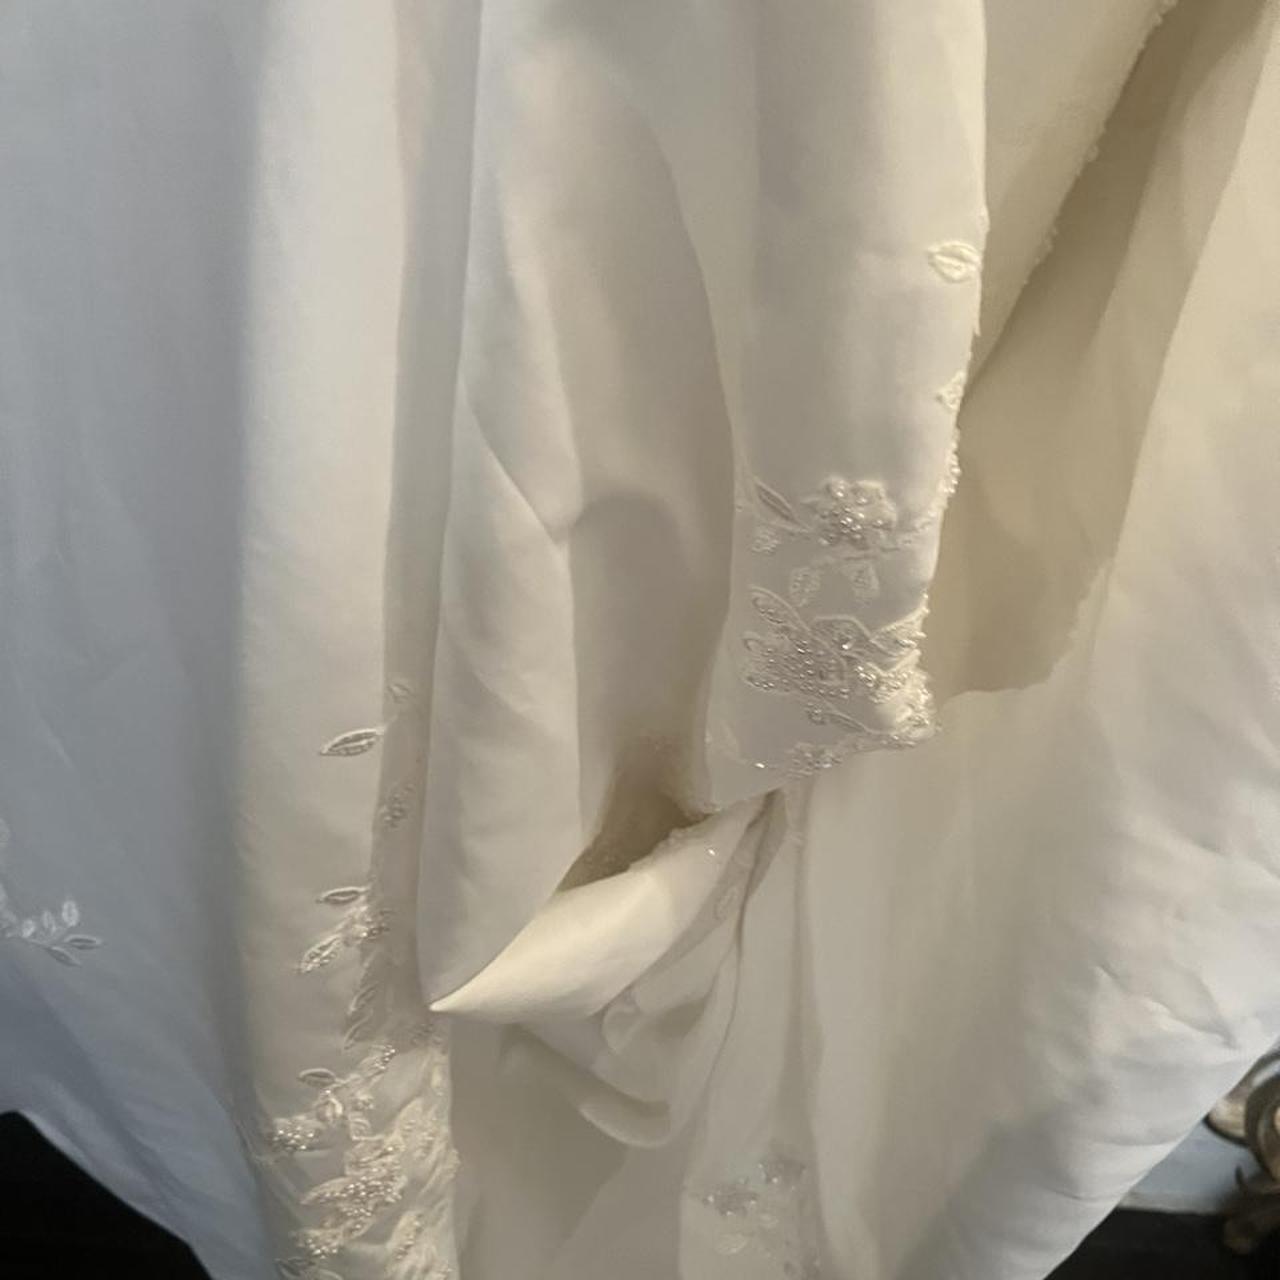 Christina Wu Wedding Dress. NWT. Does have a few... - Depop